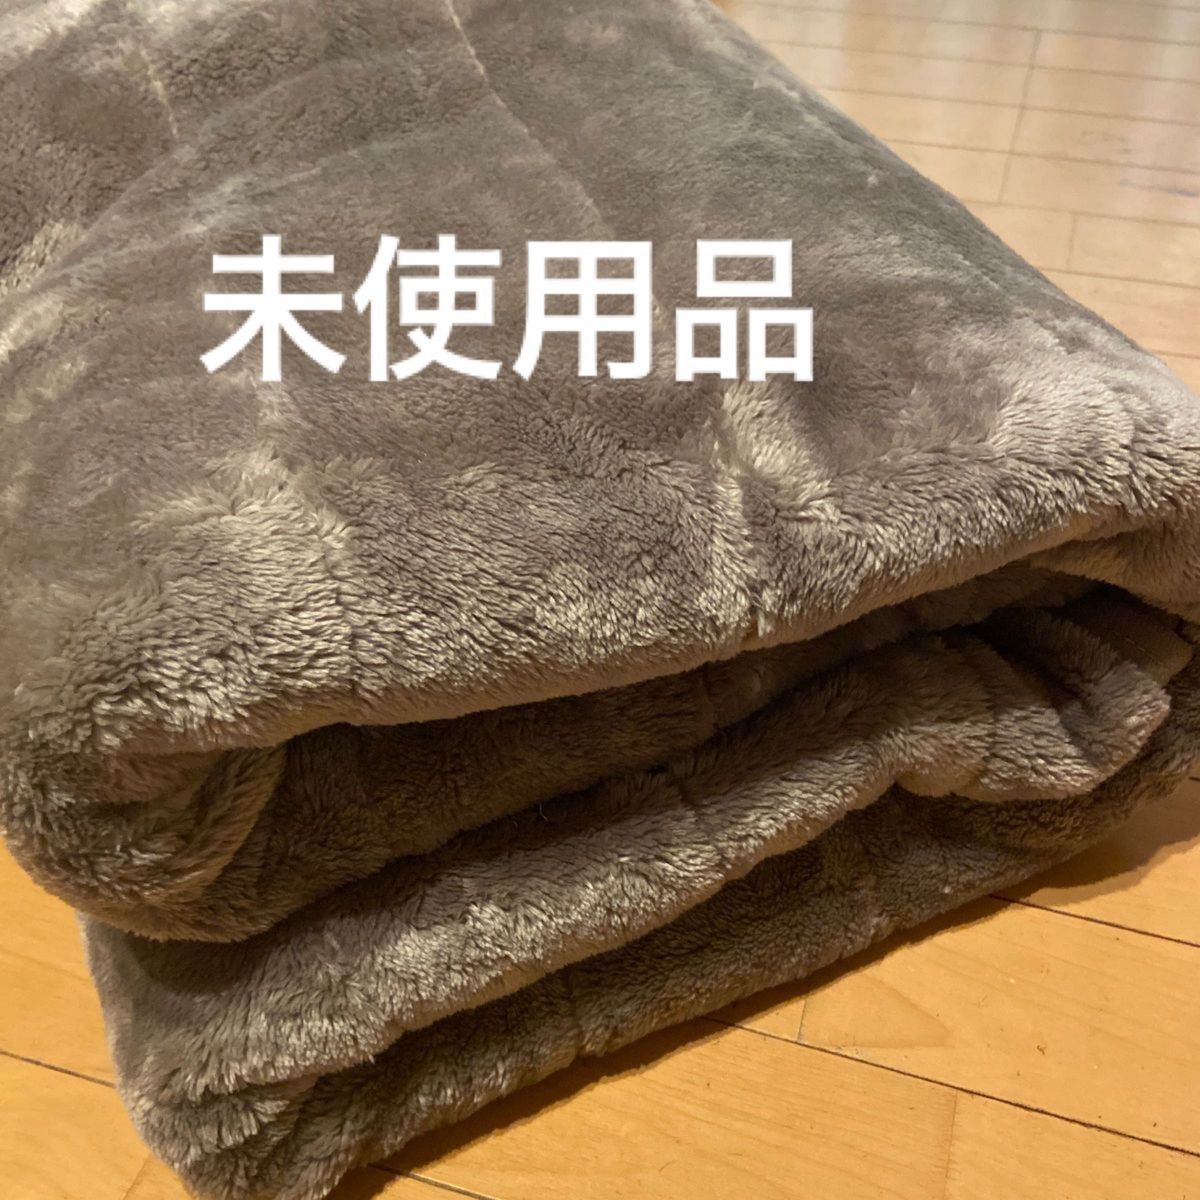 3M シンサレート 合わせ毛布 160×200 セミダブル 敷き毛布にも掛け毛布にも 自宅で洗濯可